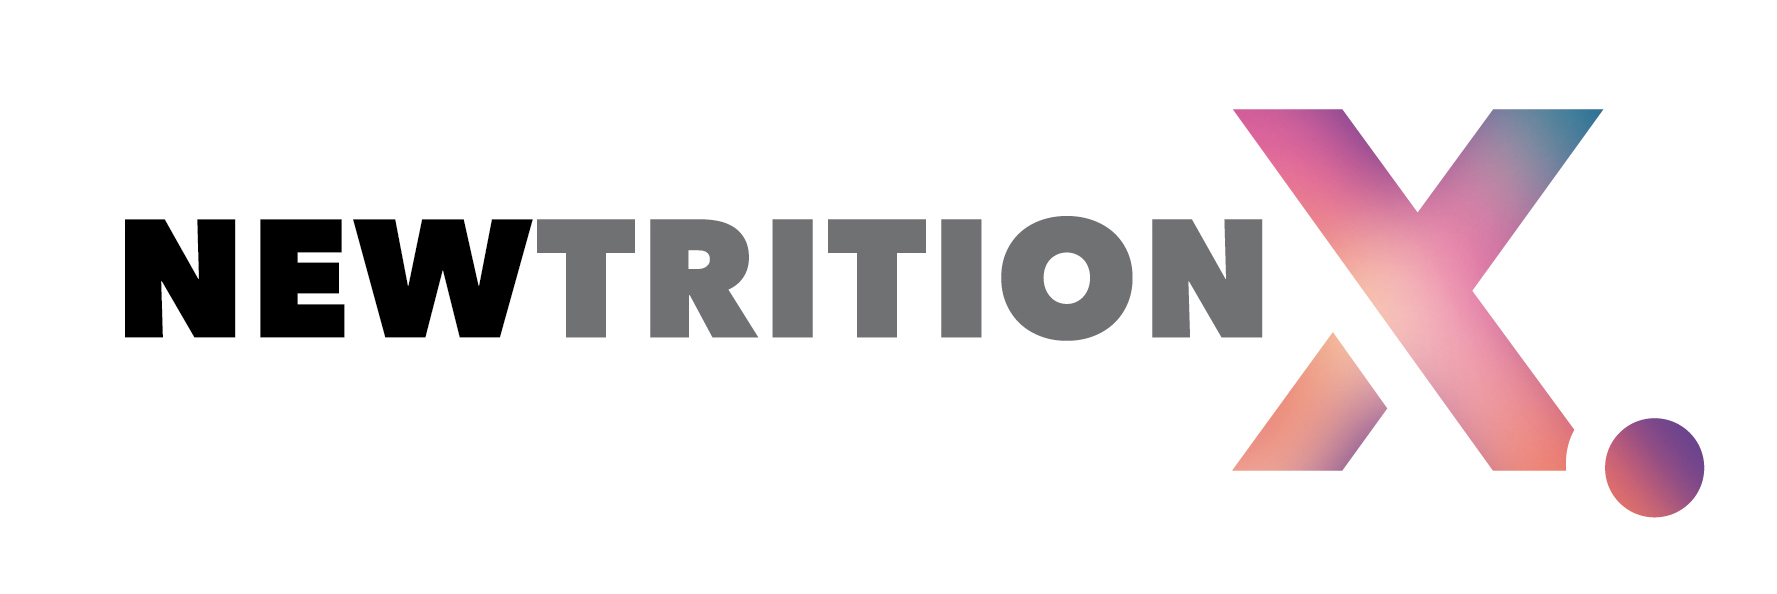 Newtrition X. - der erste internationale Branchen-Event zum Thema Personalisierte Ernhrung | Freie-Pressemitteilungen.de